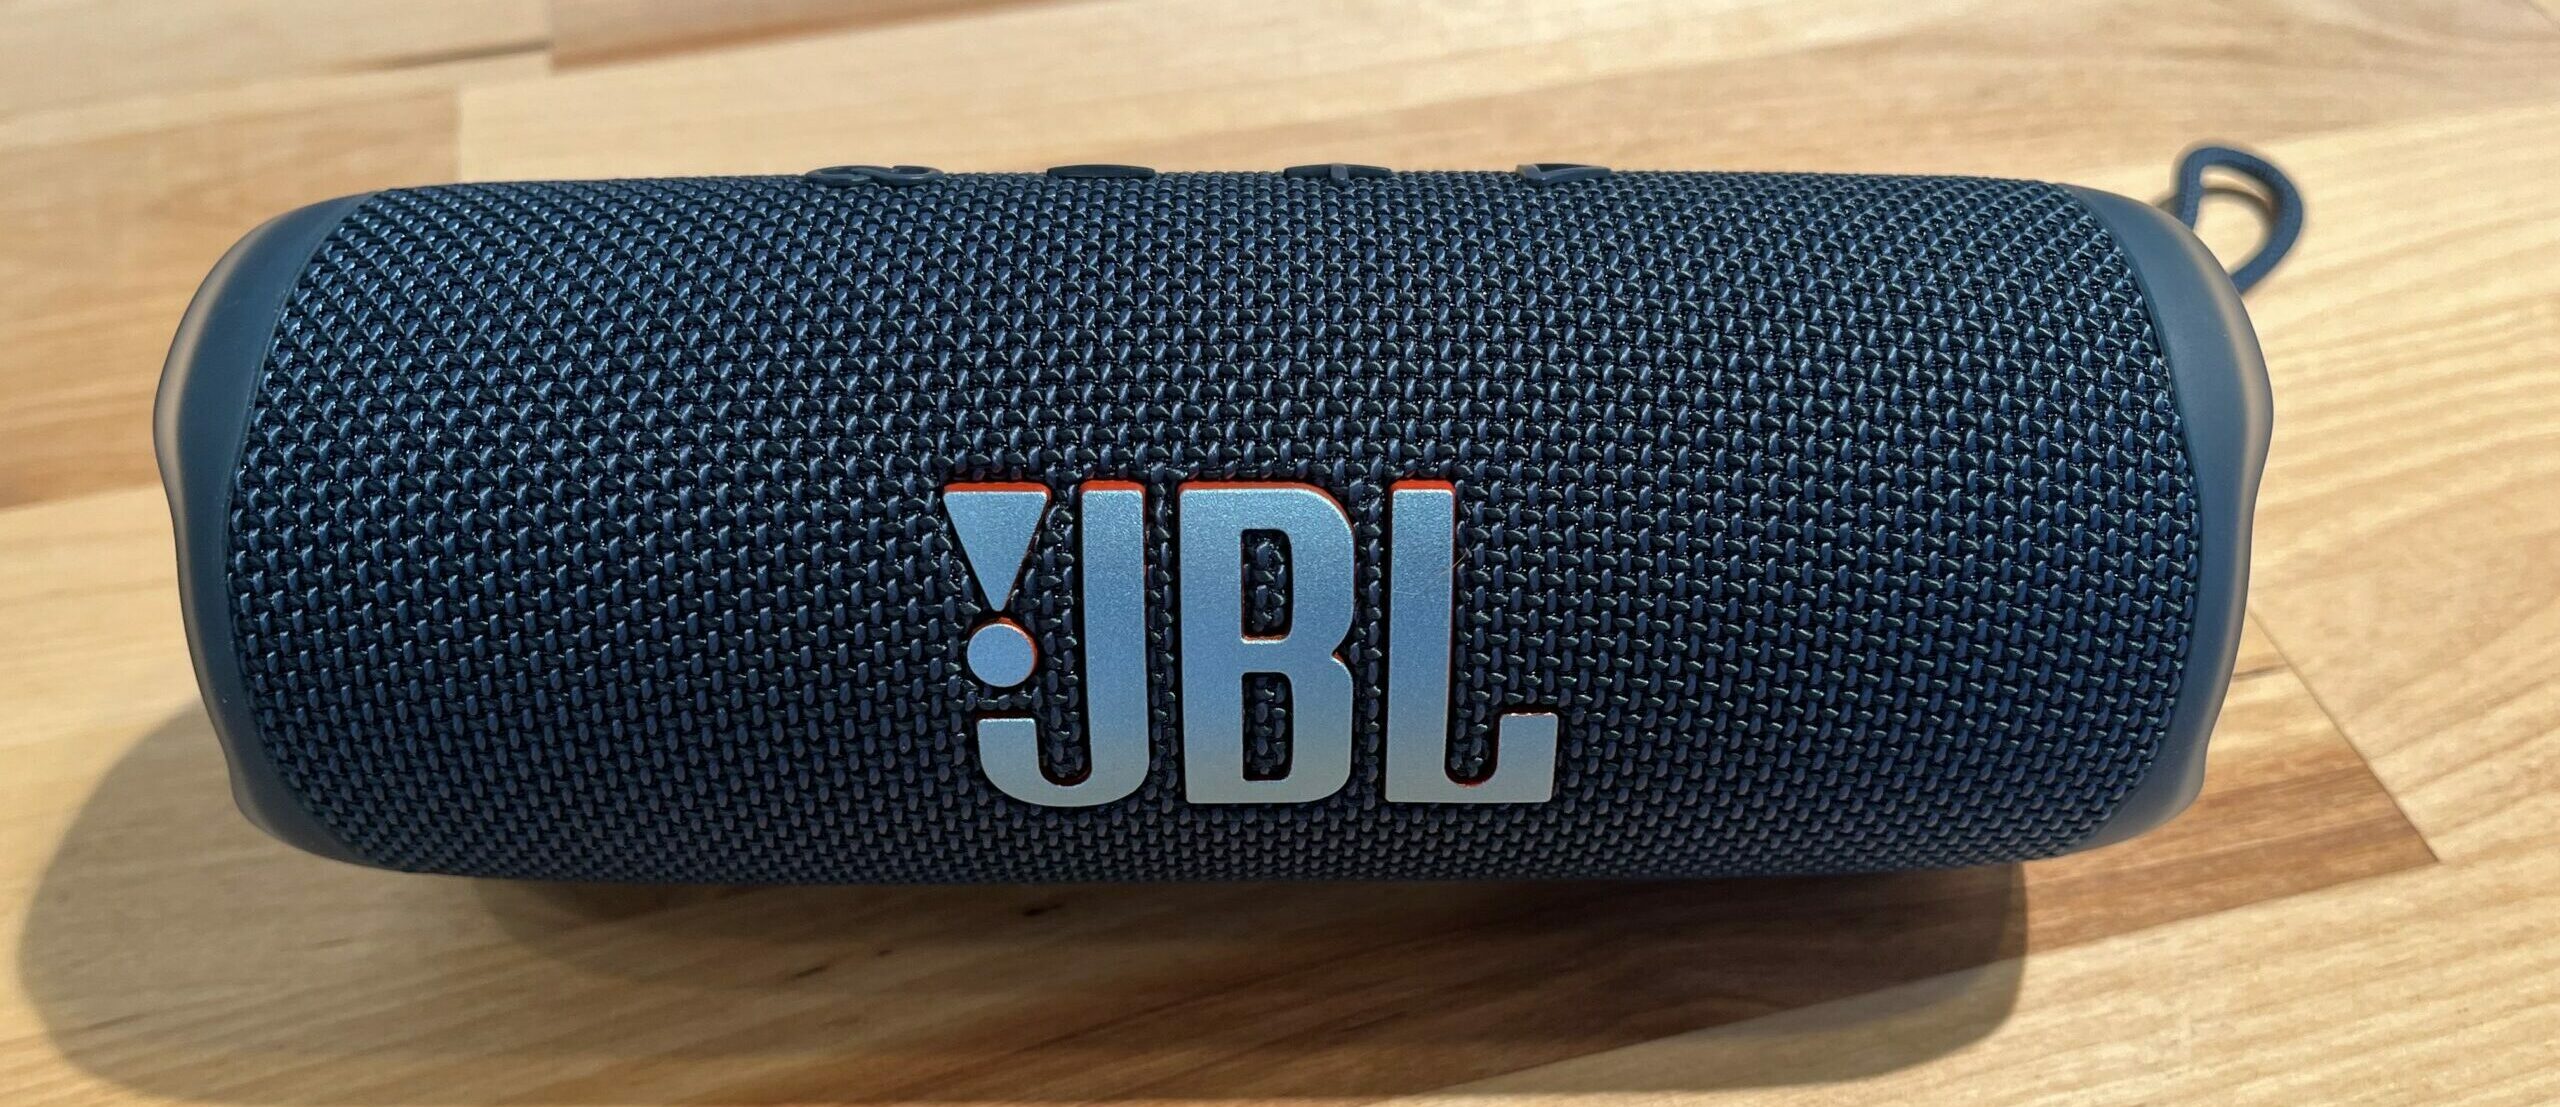 JBL Flip 6 Review